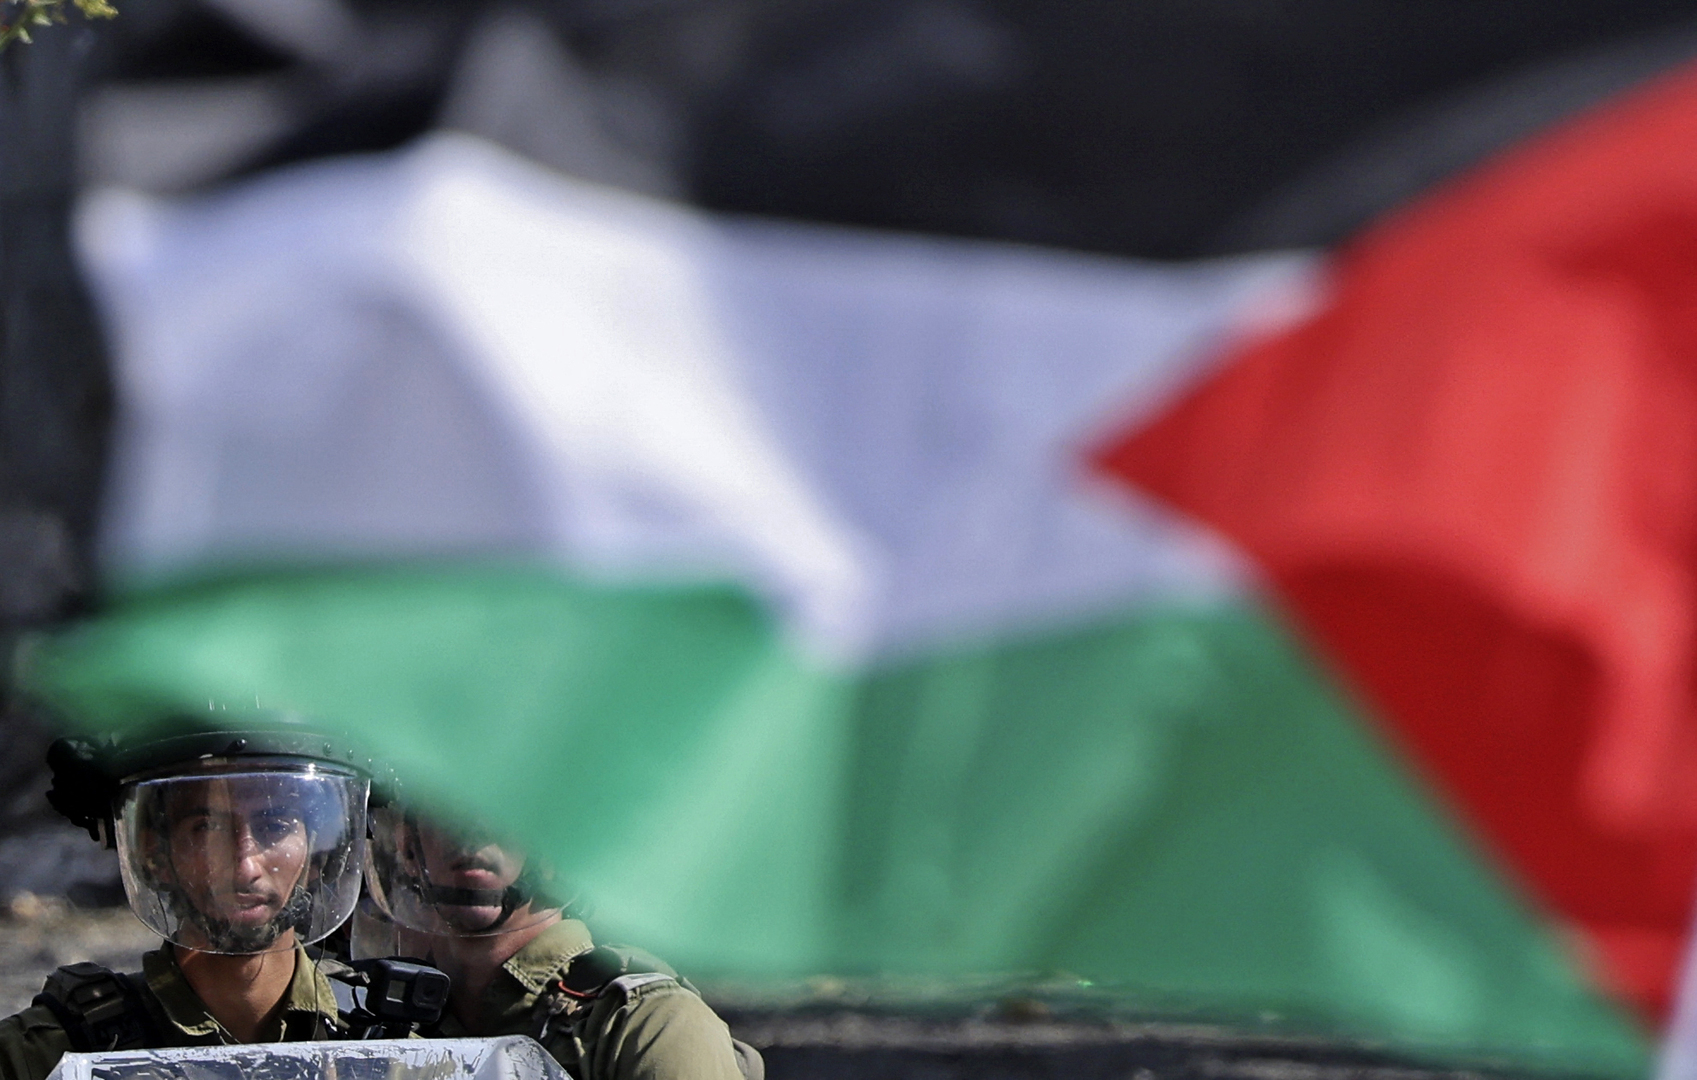 الشرطة الإسرائيلية تقتحم بلدة فلسطينية وتنزل أعلاما فلسطينية معلقة